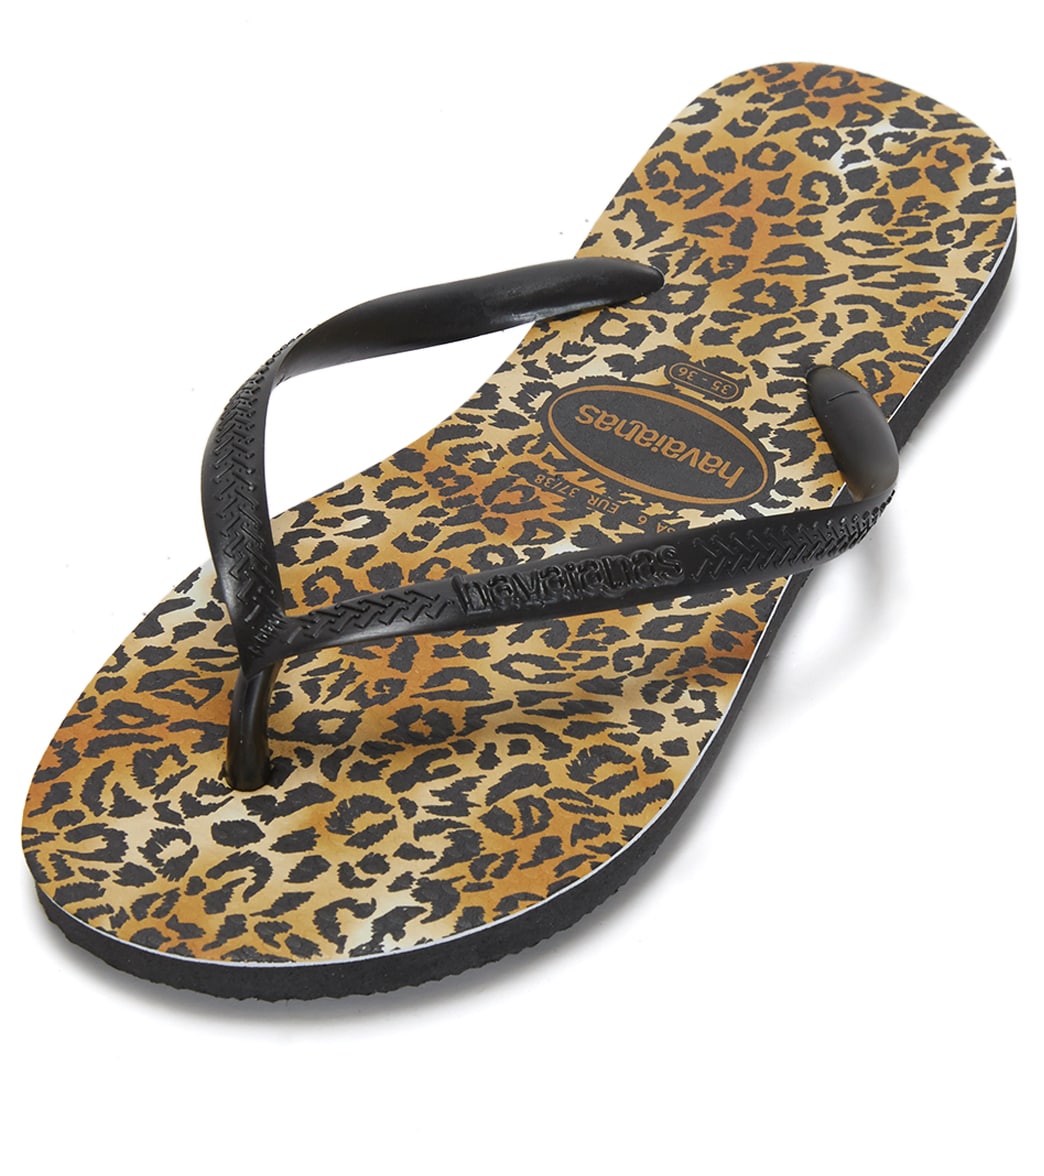 Havaianas Slim Leopard Sandals - Black/Black 35/36 - Swimoutlet.com